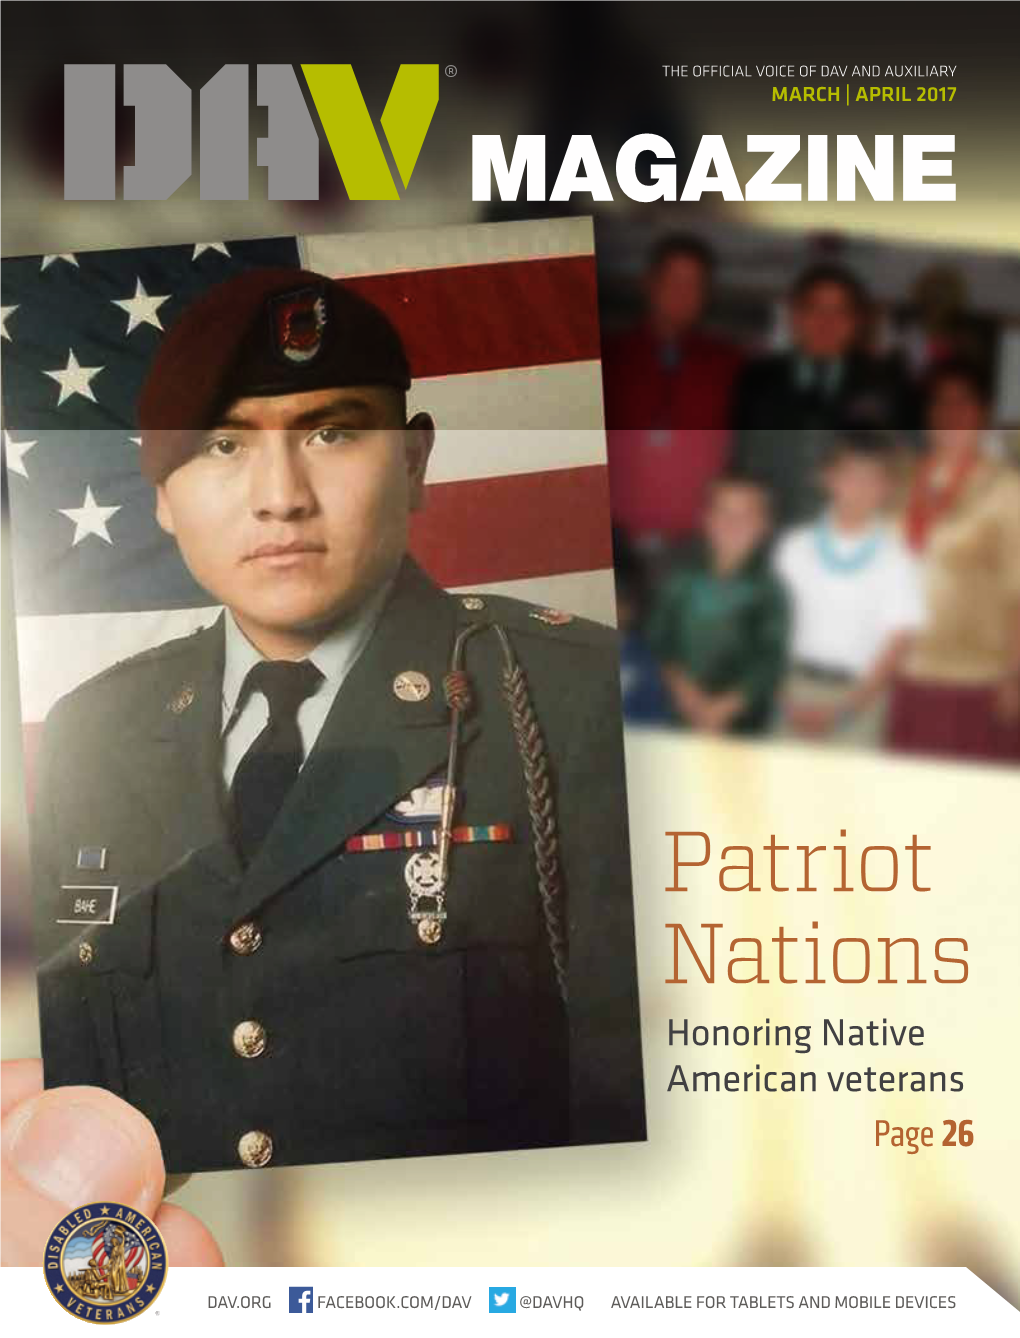 Patriot Nations Honoring Native American Veterans Page 26